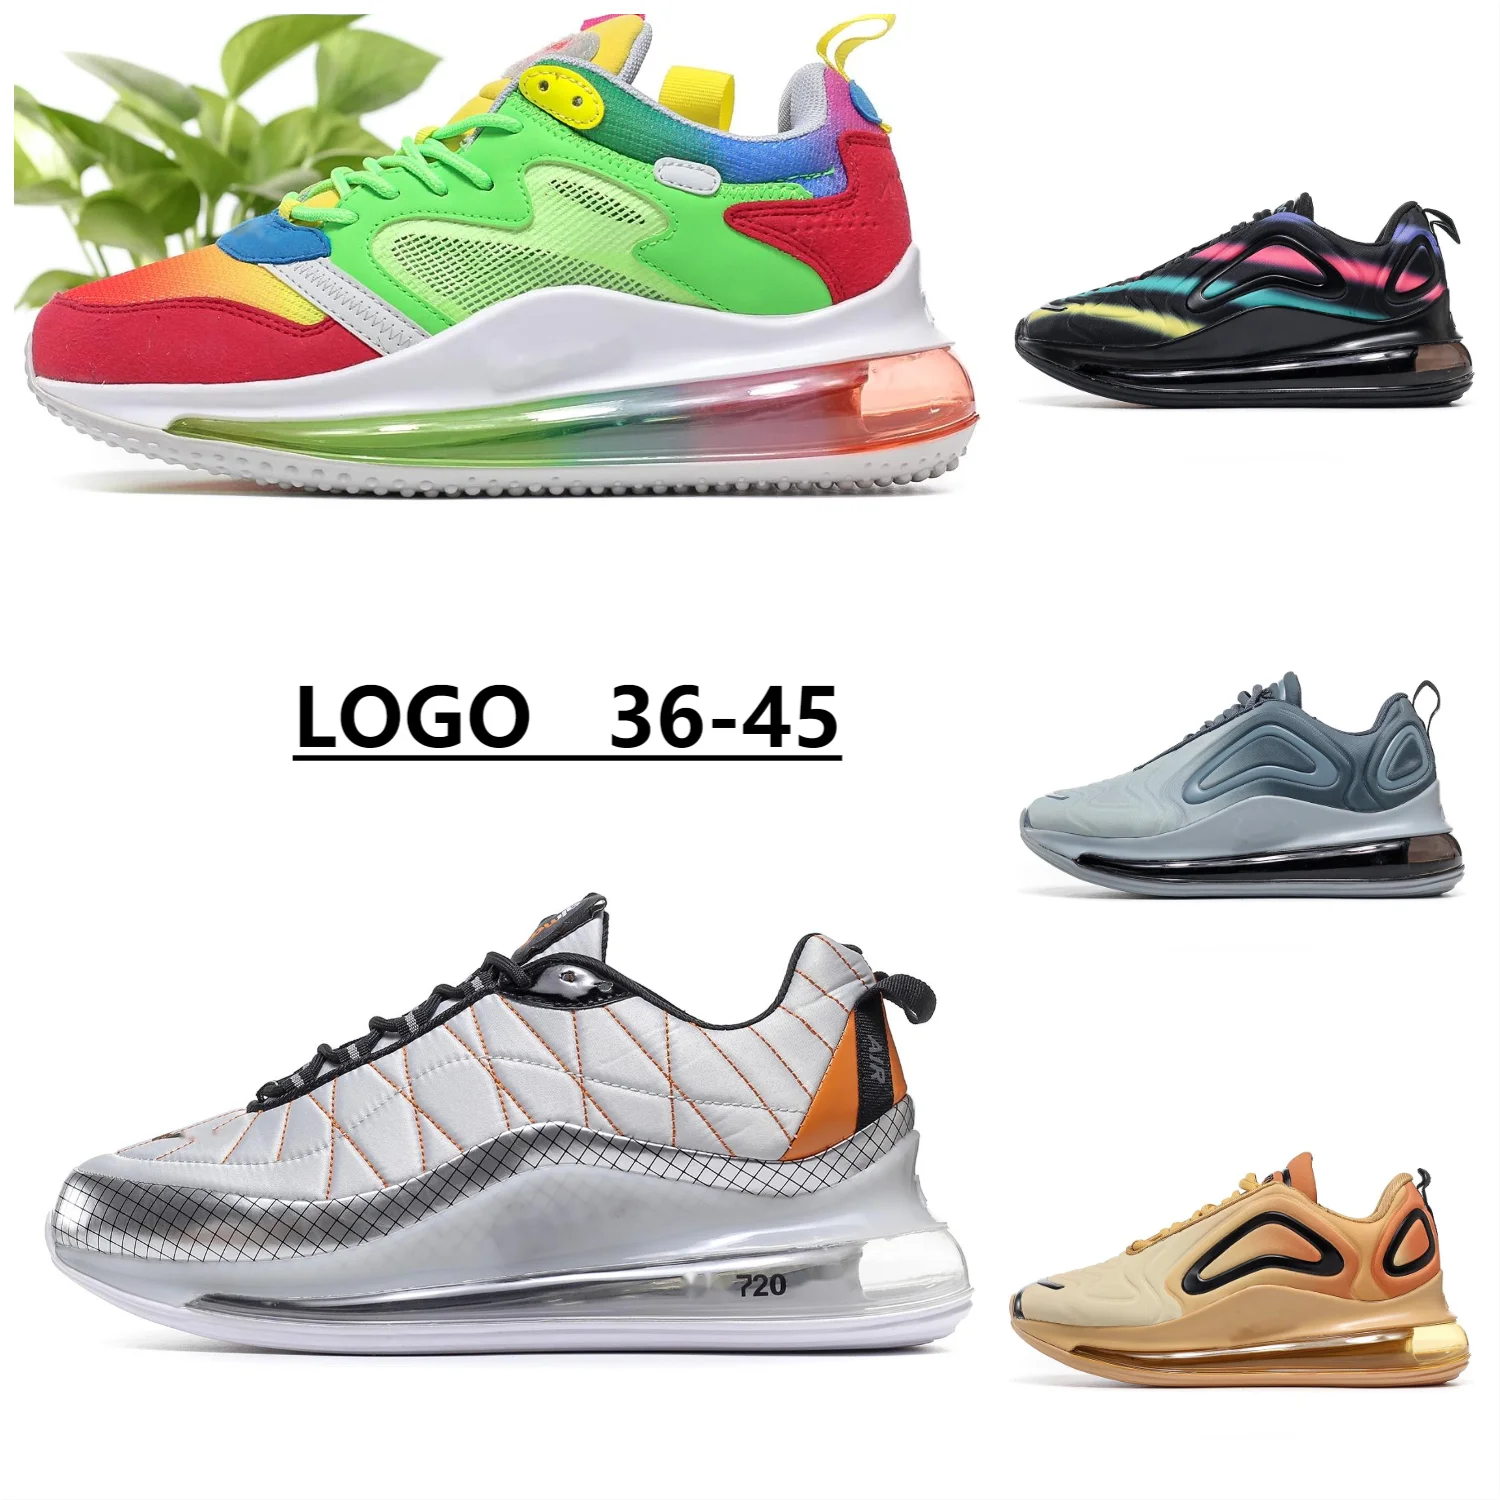 

Sneakers comfort unisex max 720 multiple colour 36-45 size air 270 men casual shoes women's sneakers Couple shoes jogging shoes